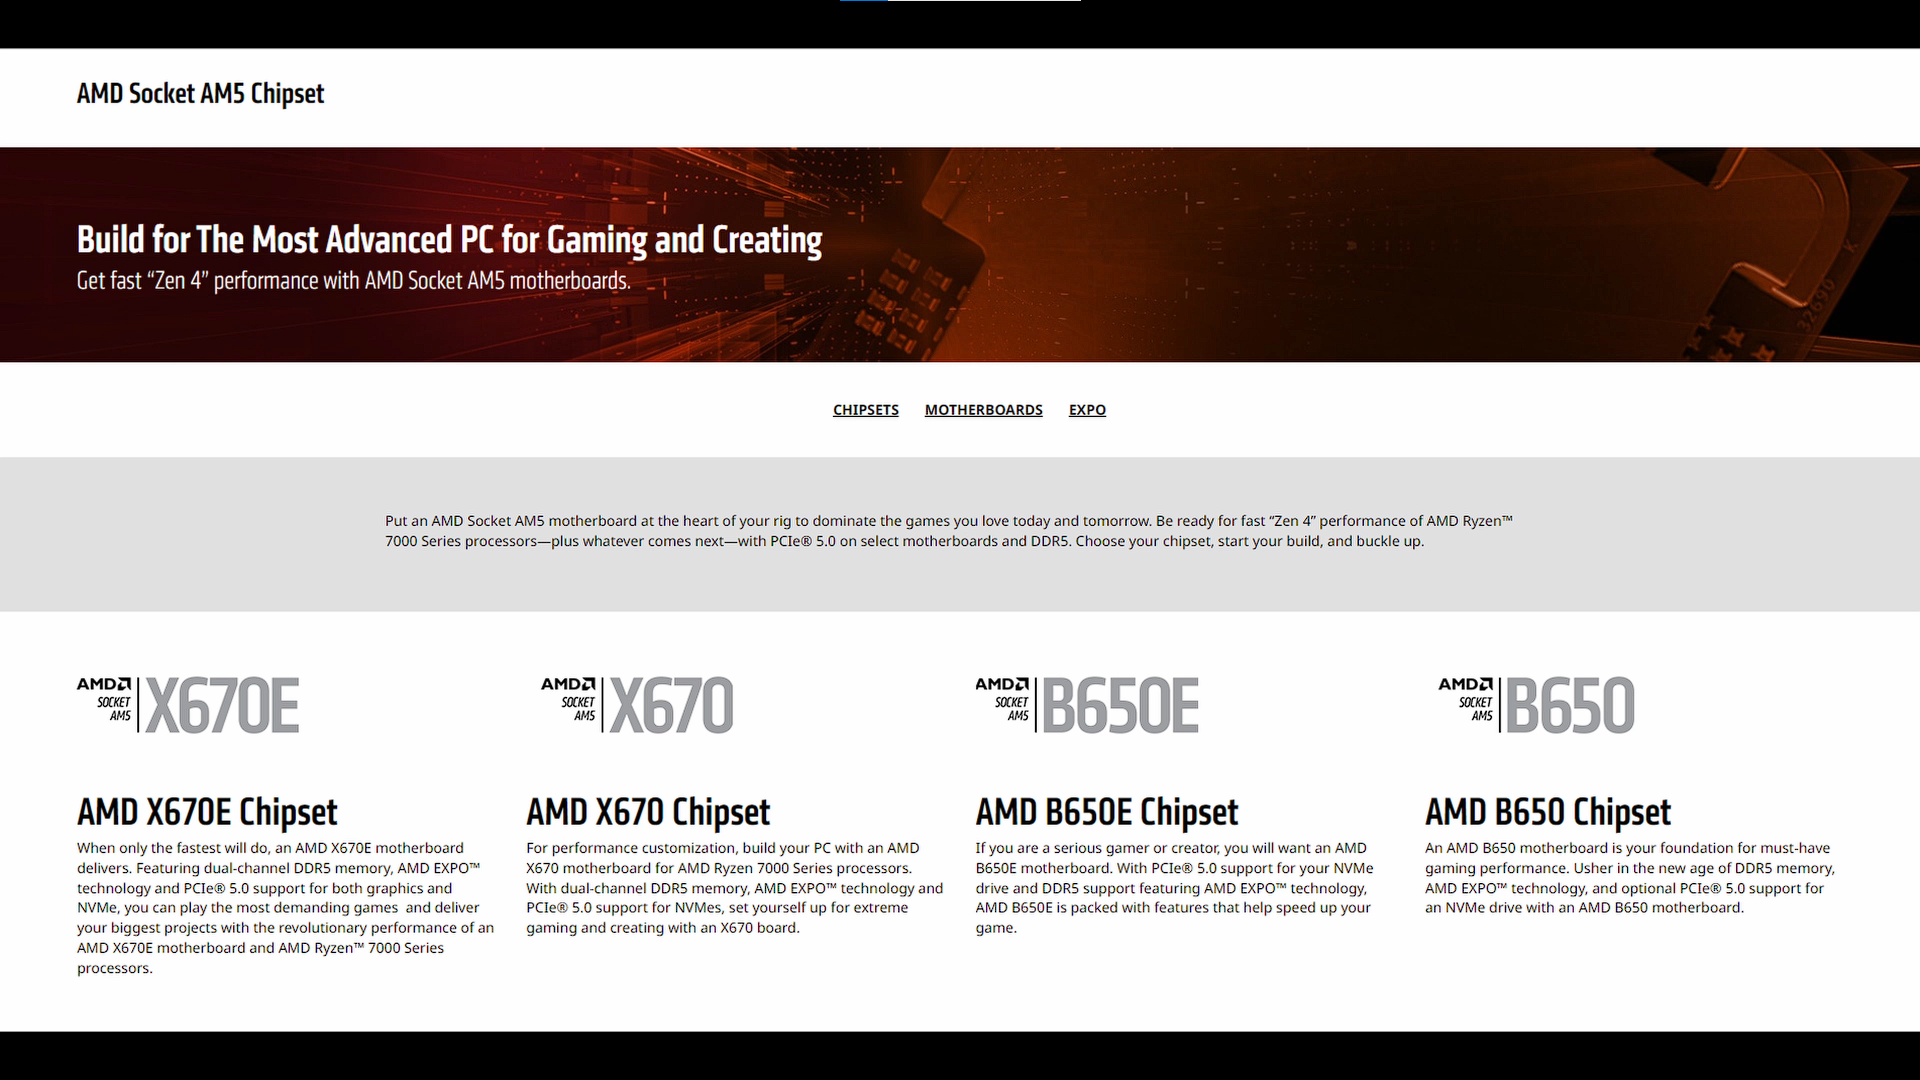 AMD AM5 Chipset Lineup